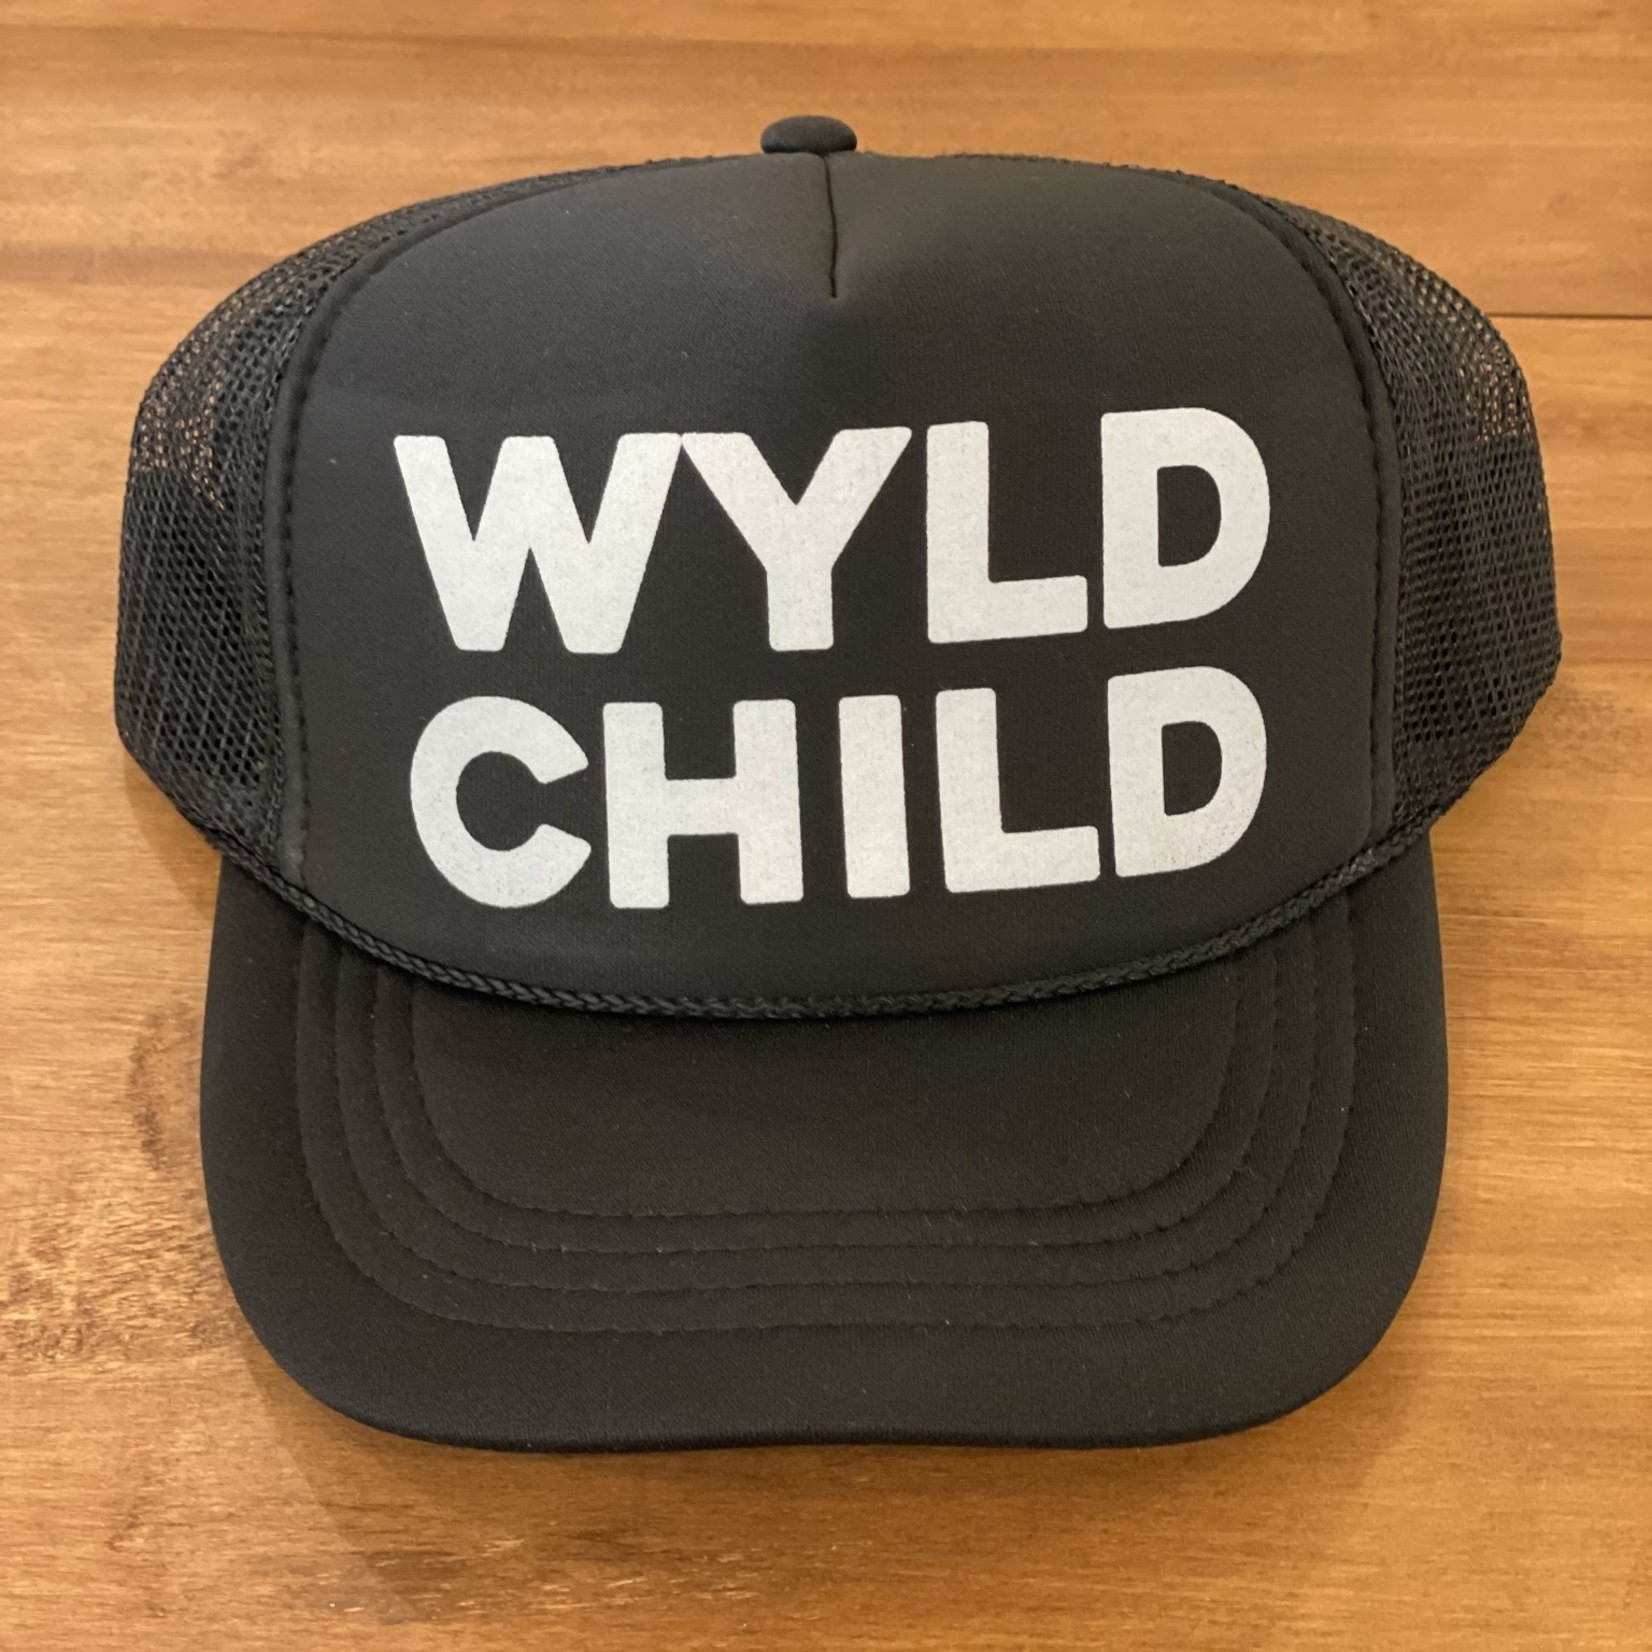 WYLD Child Hat